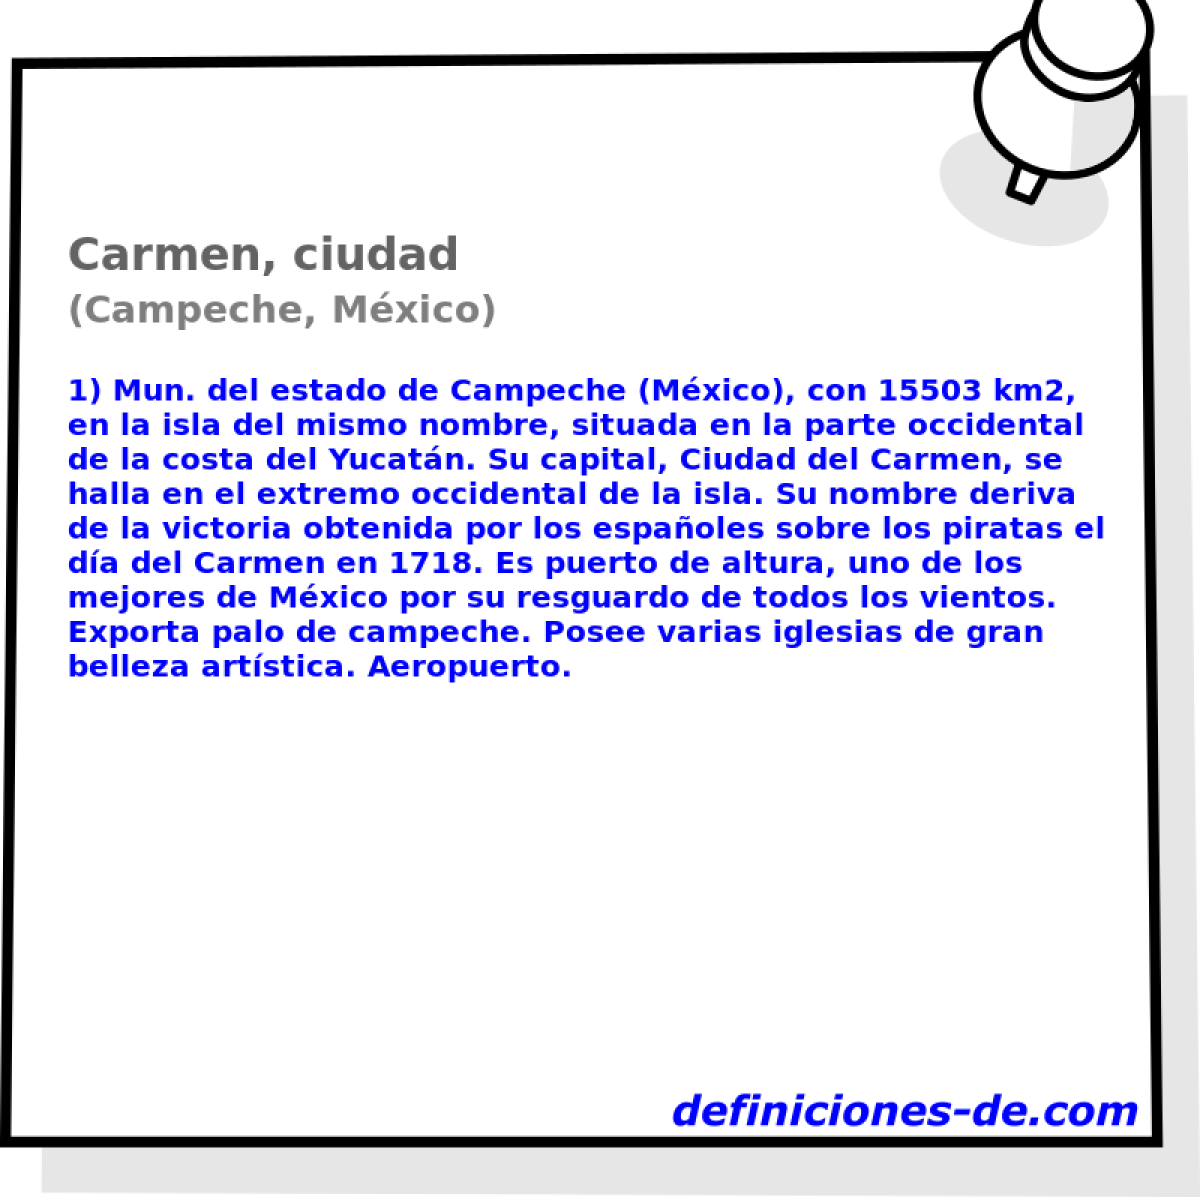 Carmen, ciudad (Campeche, Mxico)